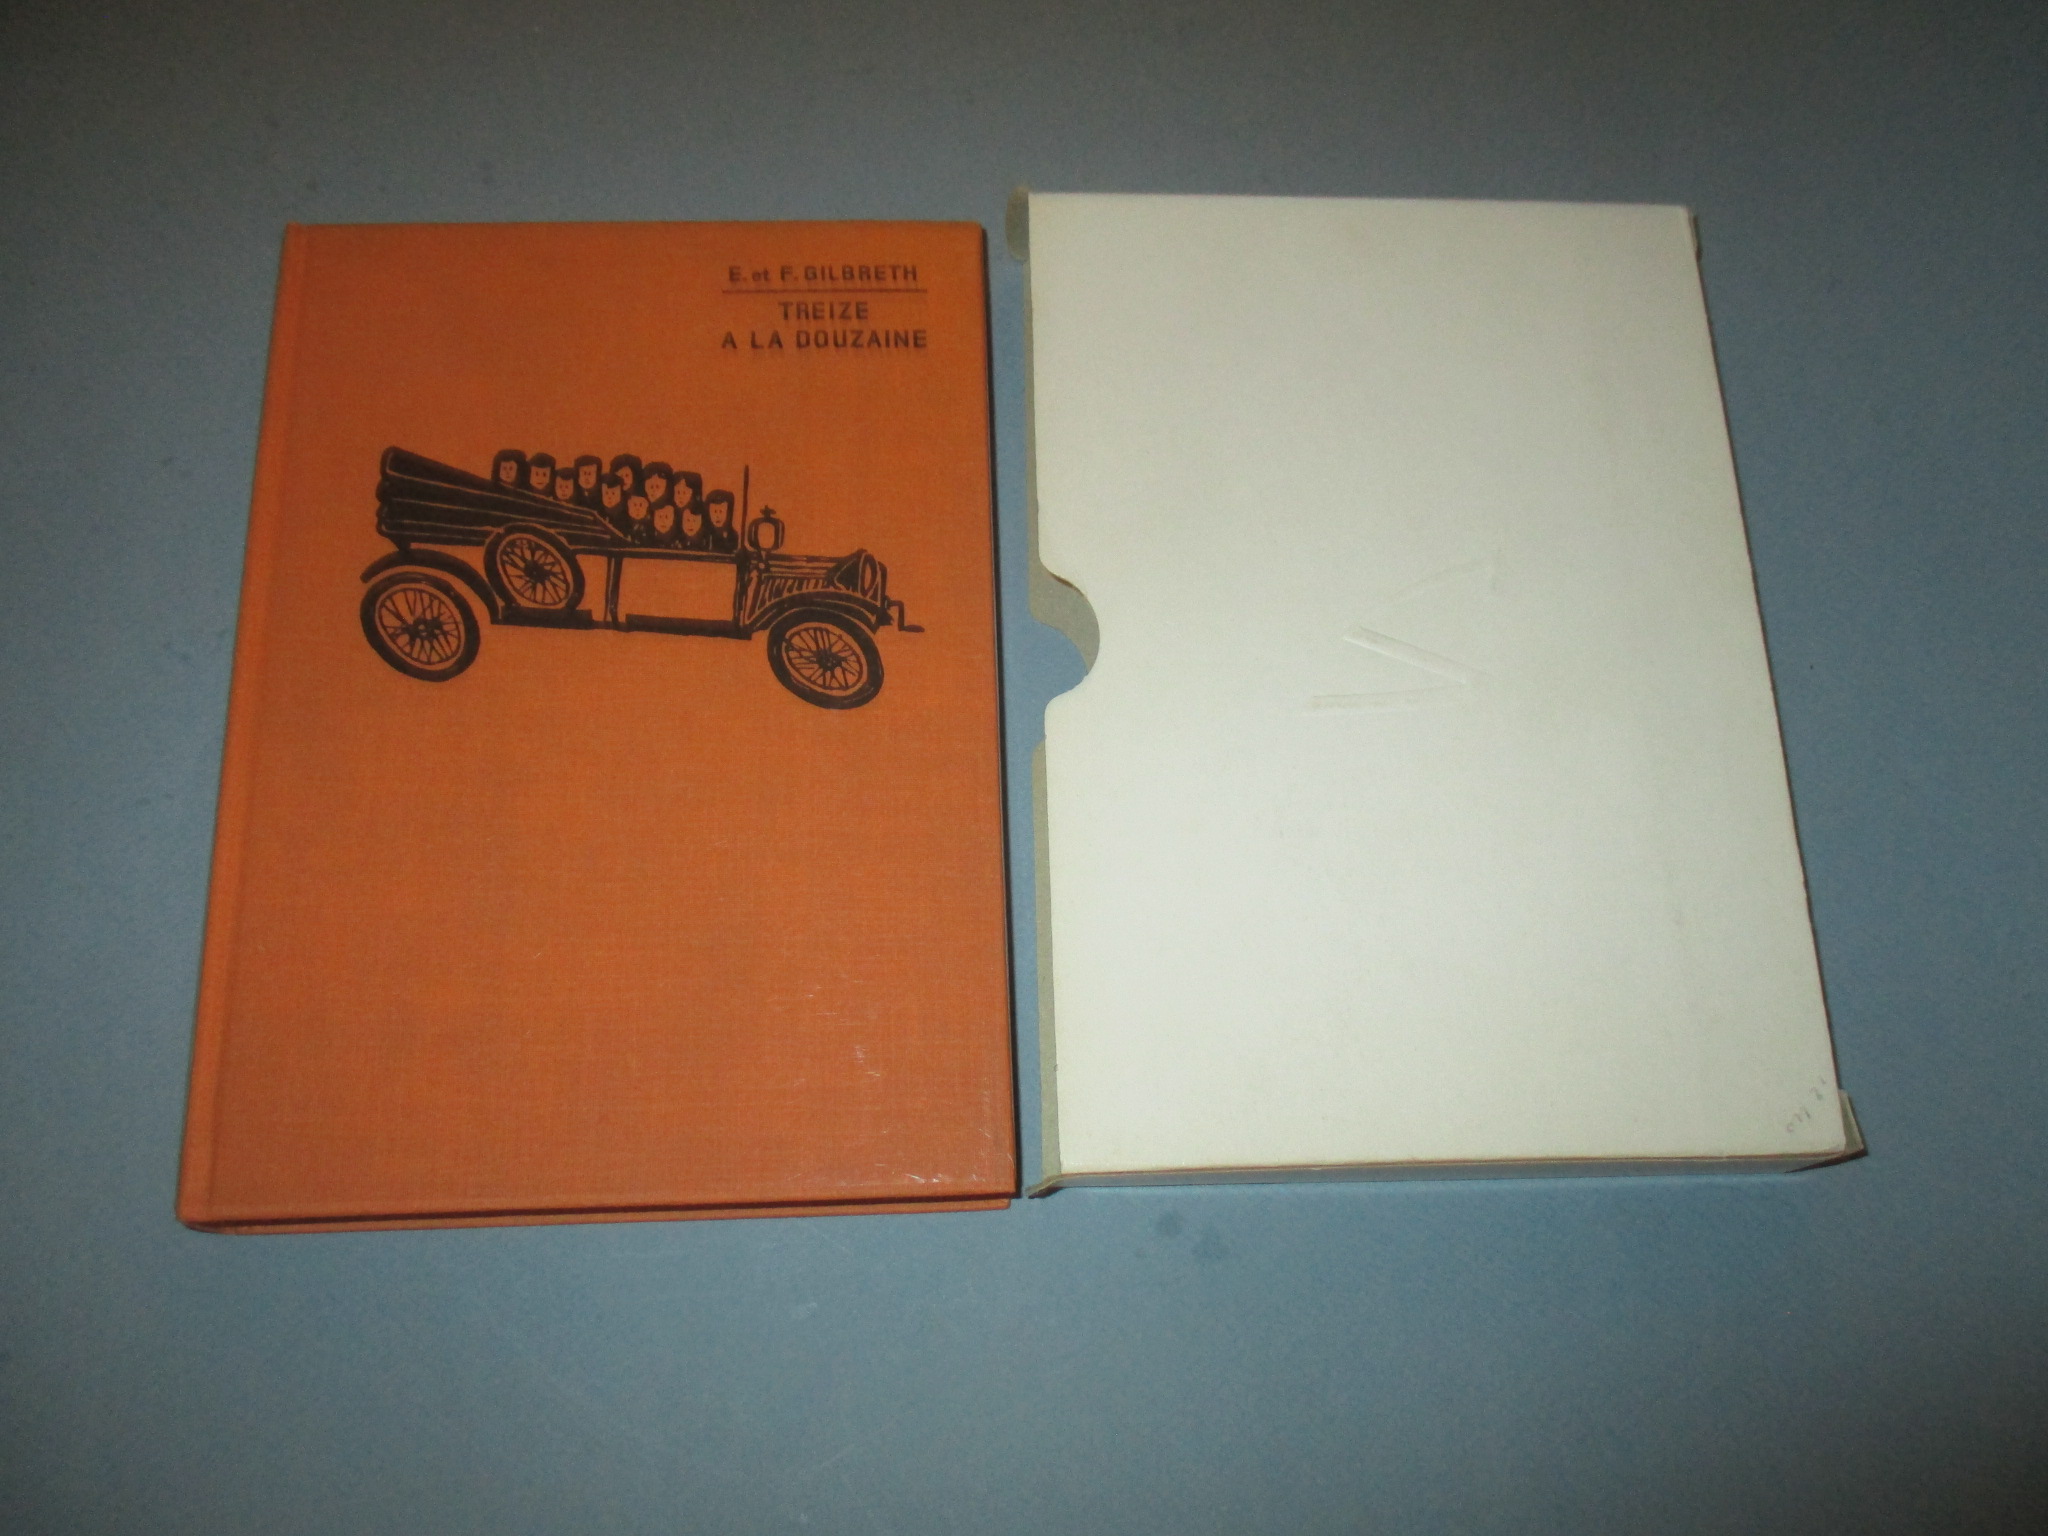 Treize à la douzaine, Ernestine et Frank Gilbreth, Collection Super 1000 G.P. 1966